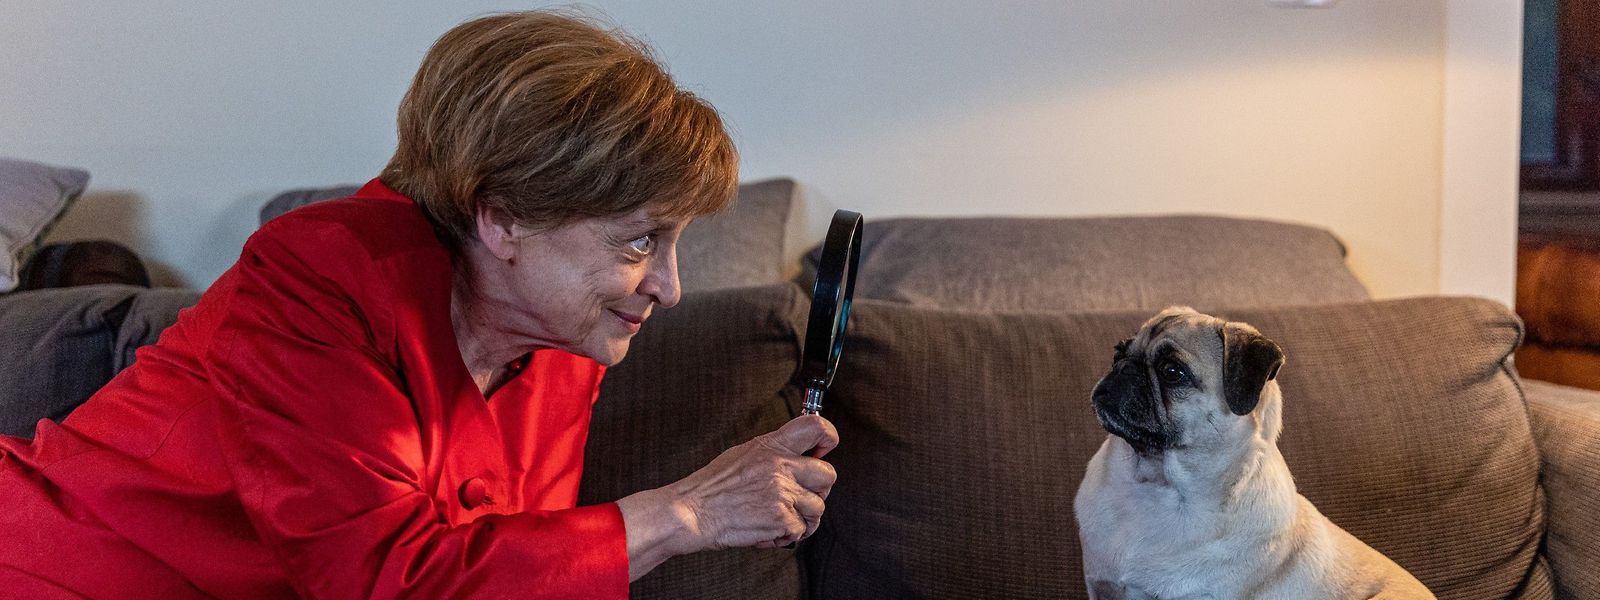 Durch den Mordfall inspiriert, nimmt Hobbydetektivin Miss Merkel (Katharina Thalbach) ihren Mops Helmut etwas näher unter die Lupe.